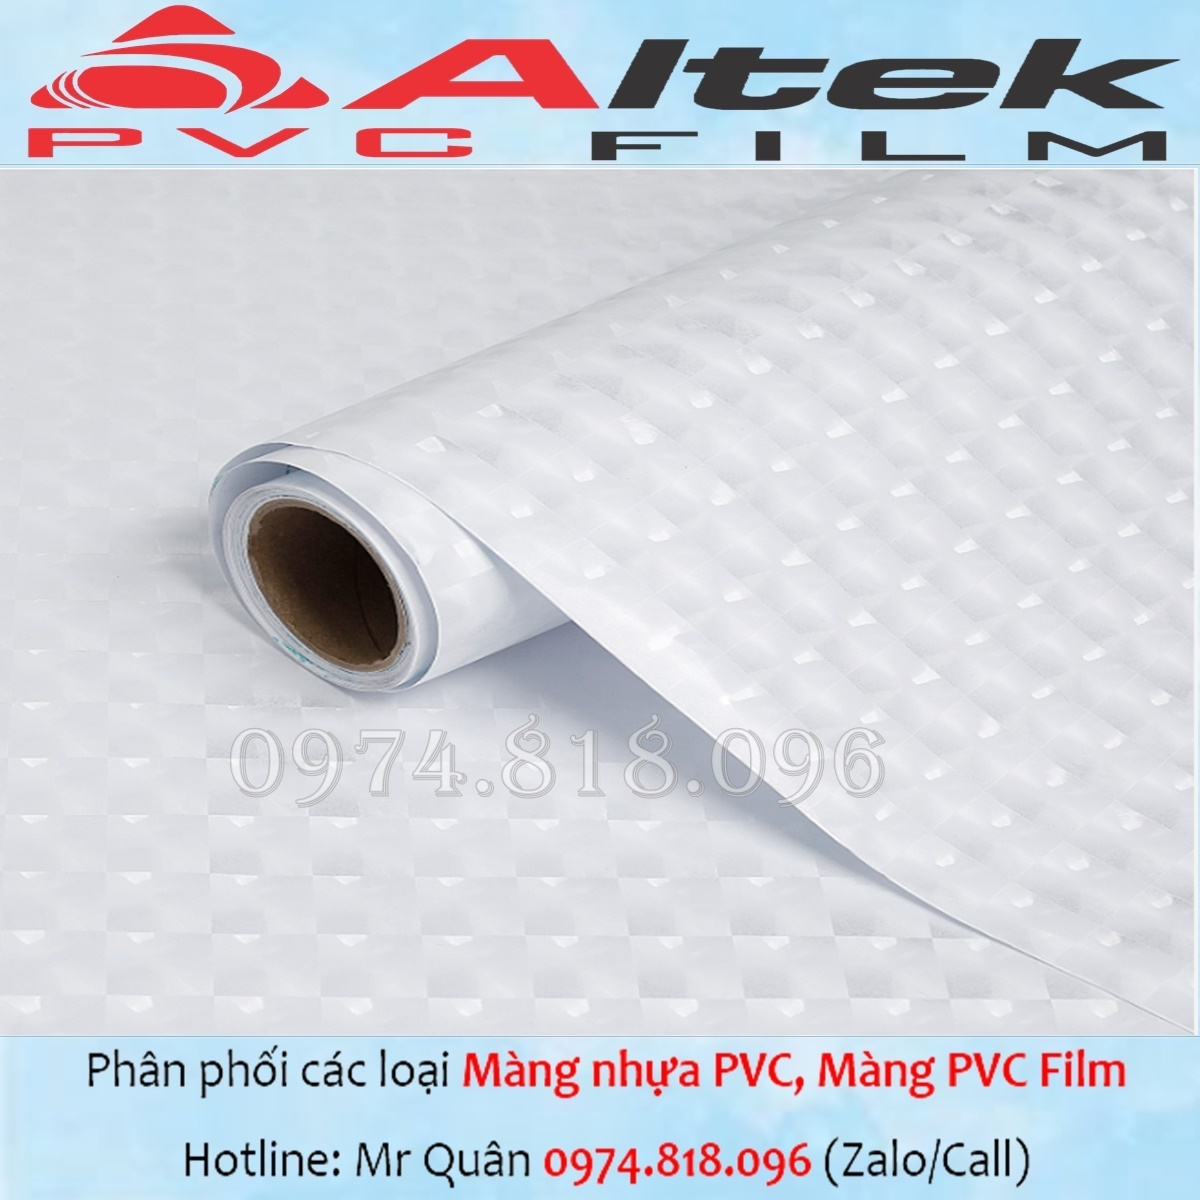 (Tổng kho) Màng nhựa PVC trong suốt – Altek Pvc Film